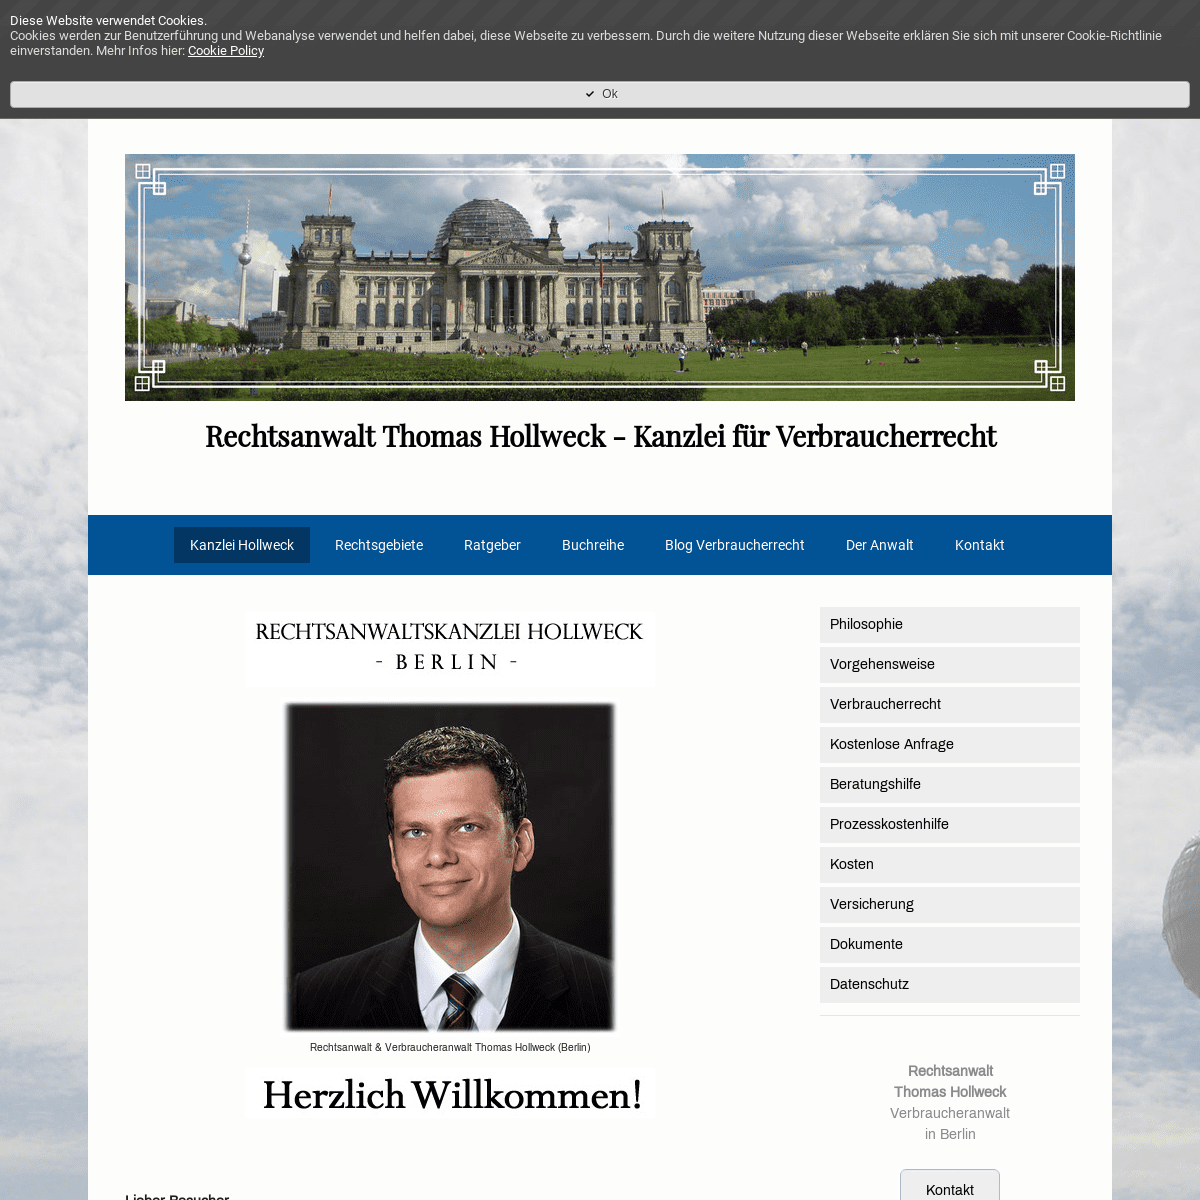 Kanzlei Hollweck - Berlin - Rechtsanwalt Thomas Hollweck